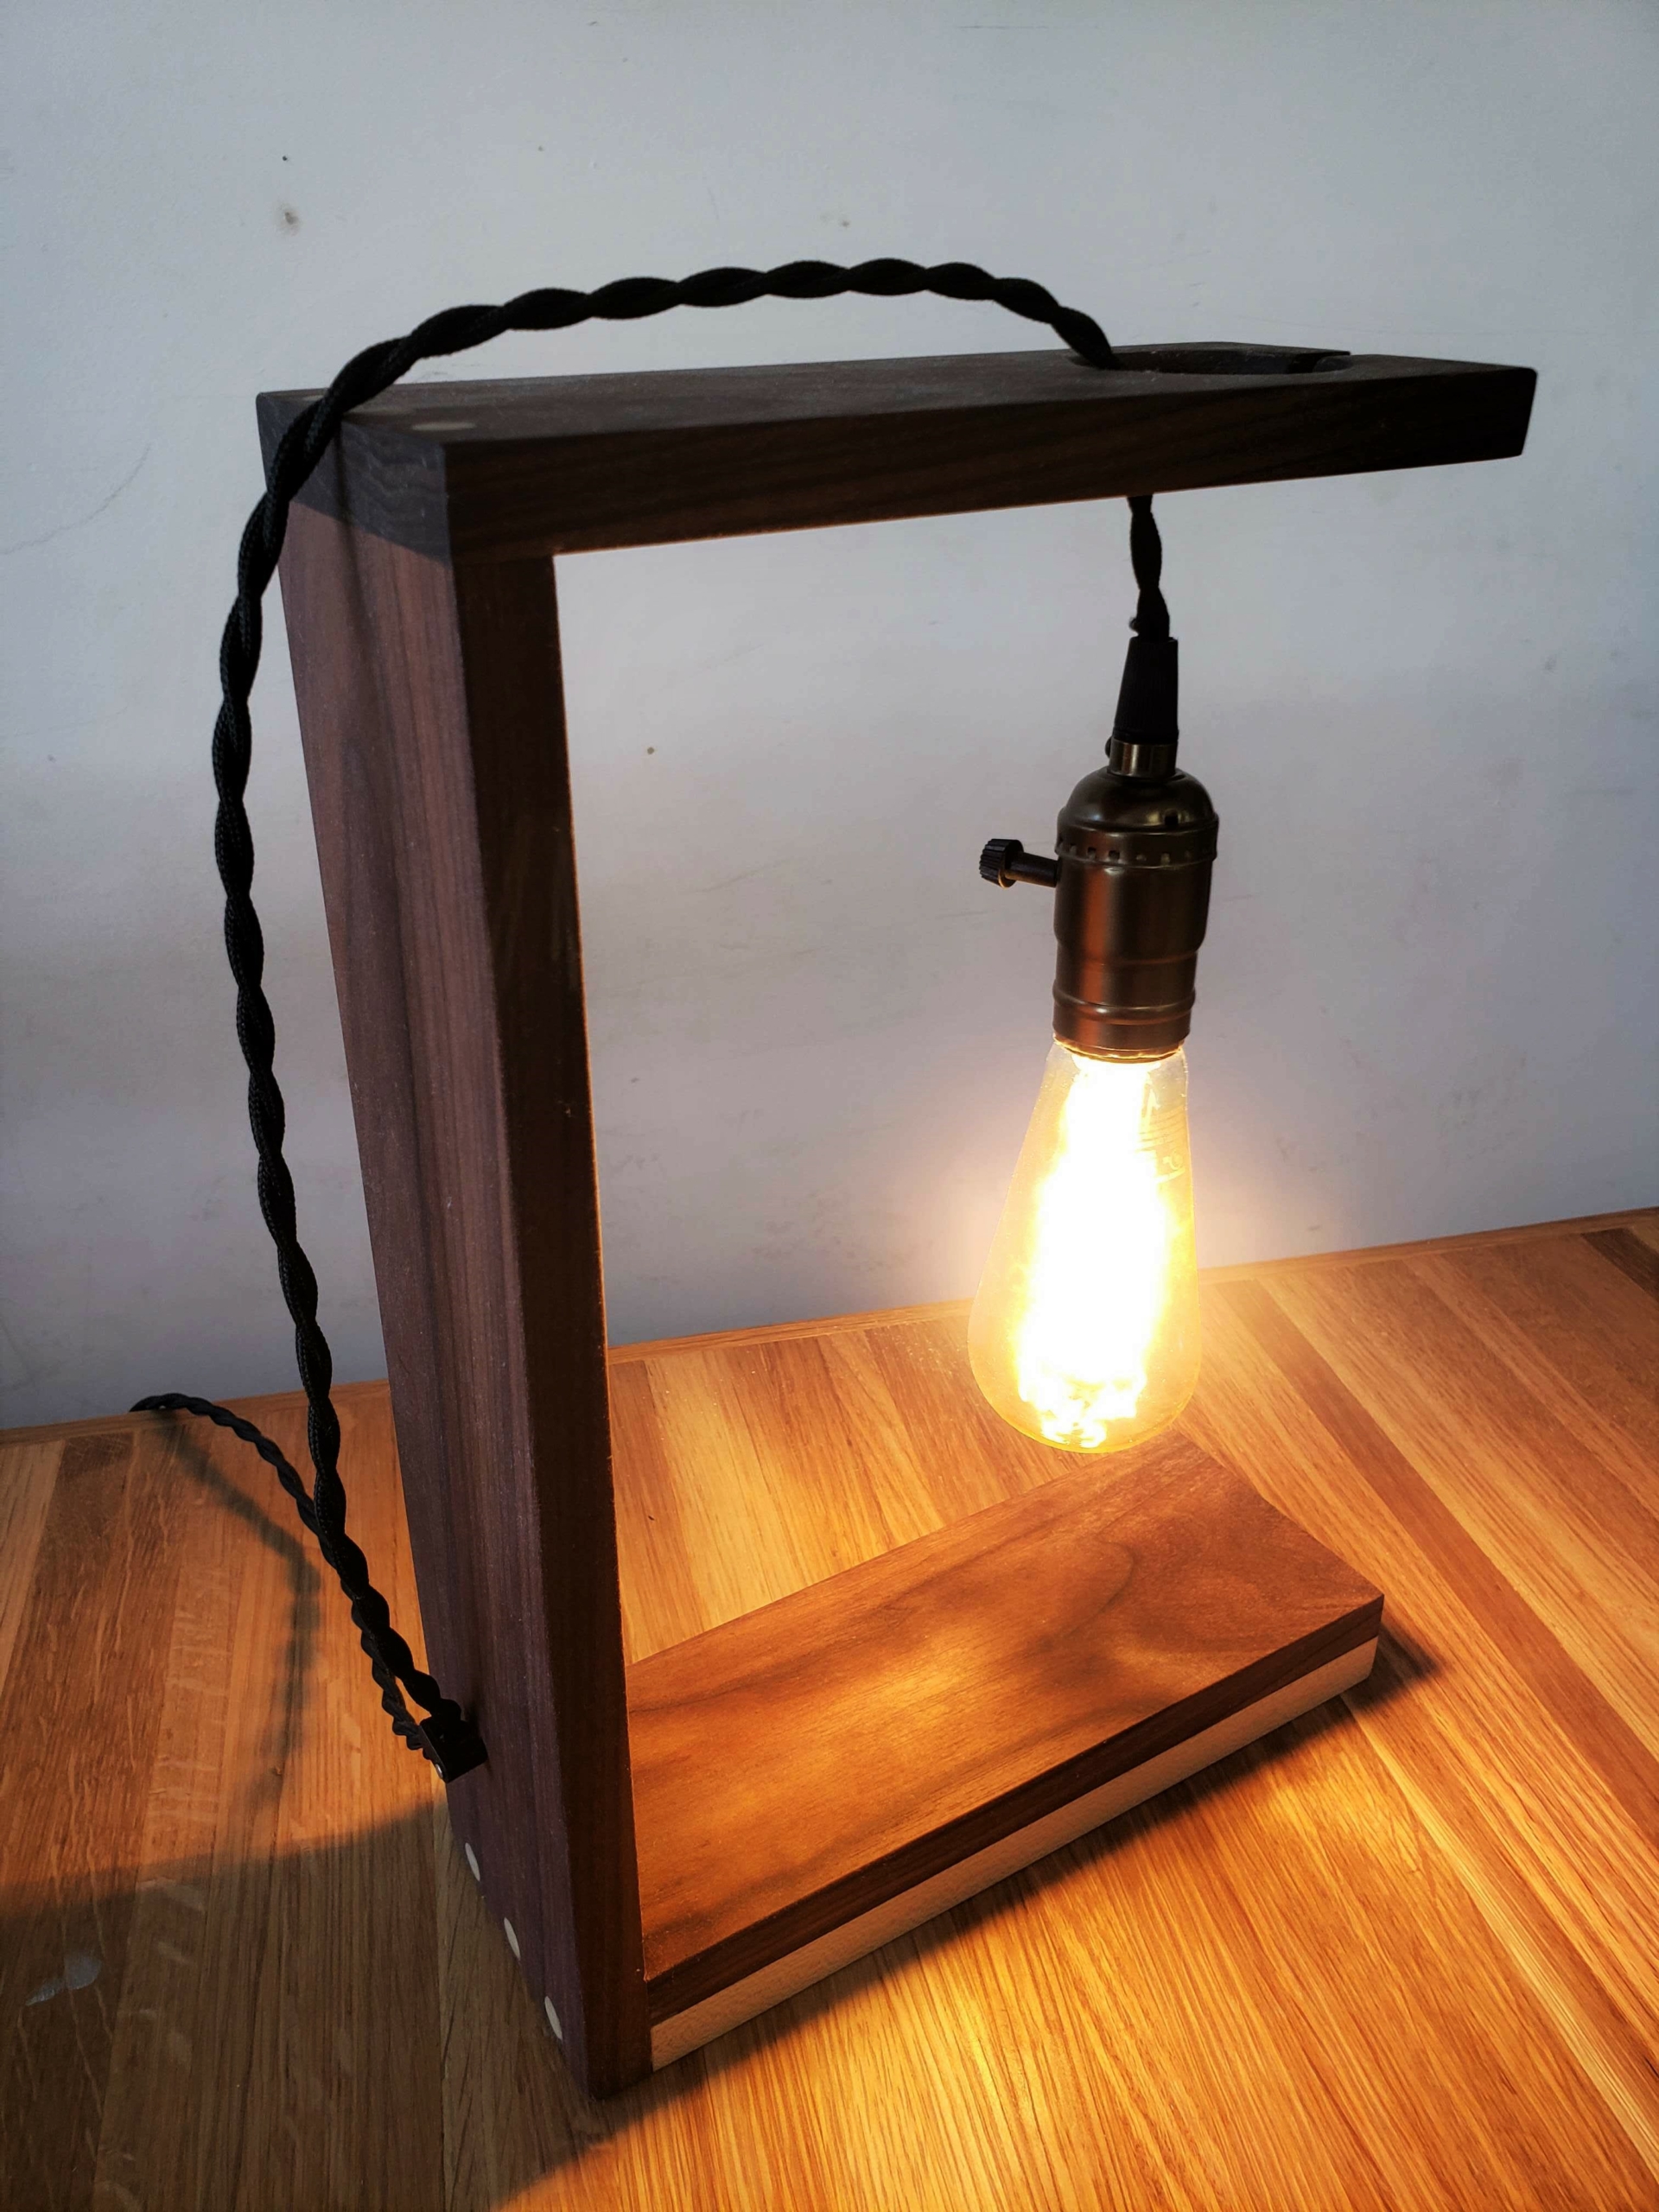 Lampe de wood : utilité et fonctionnement